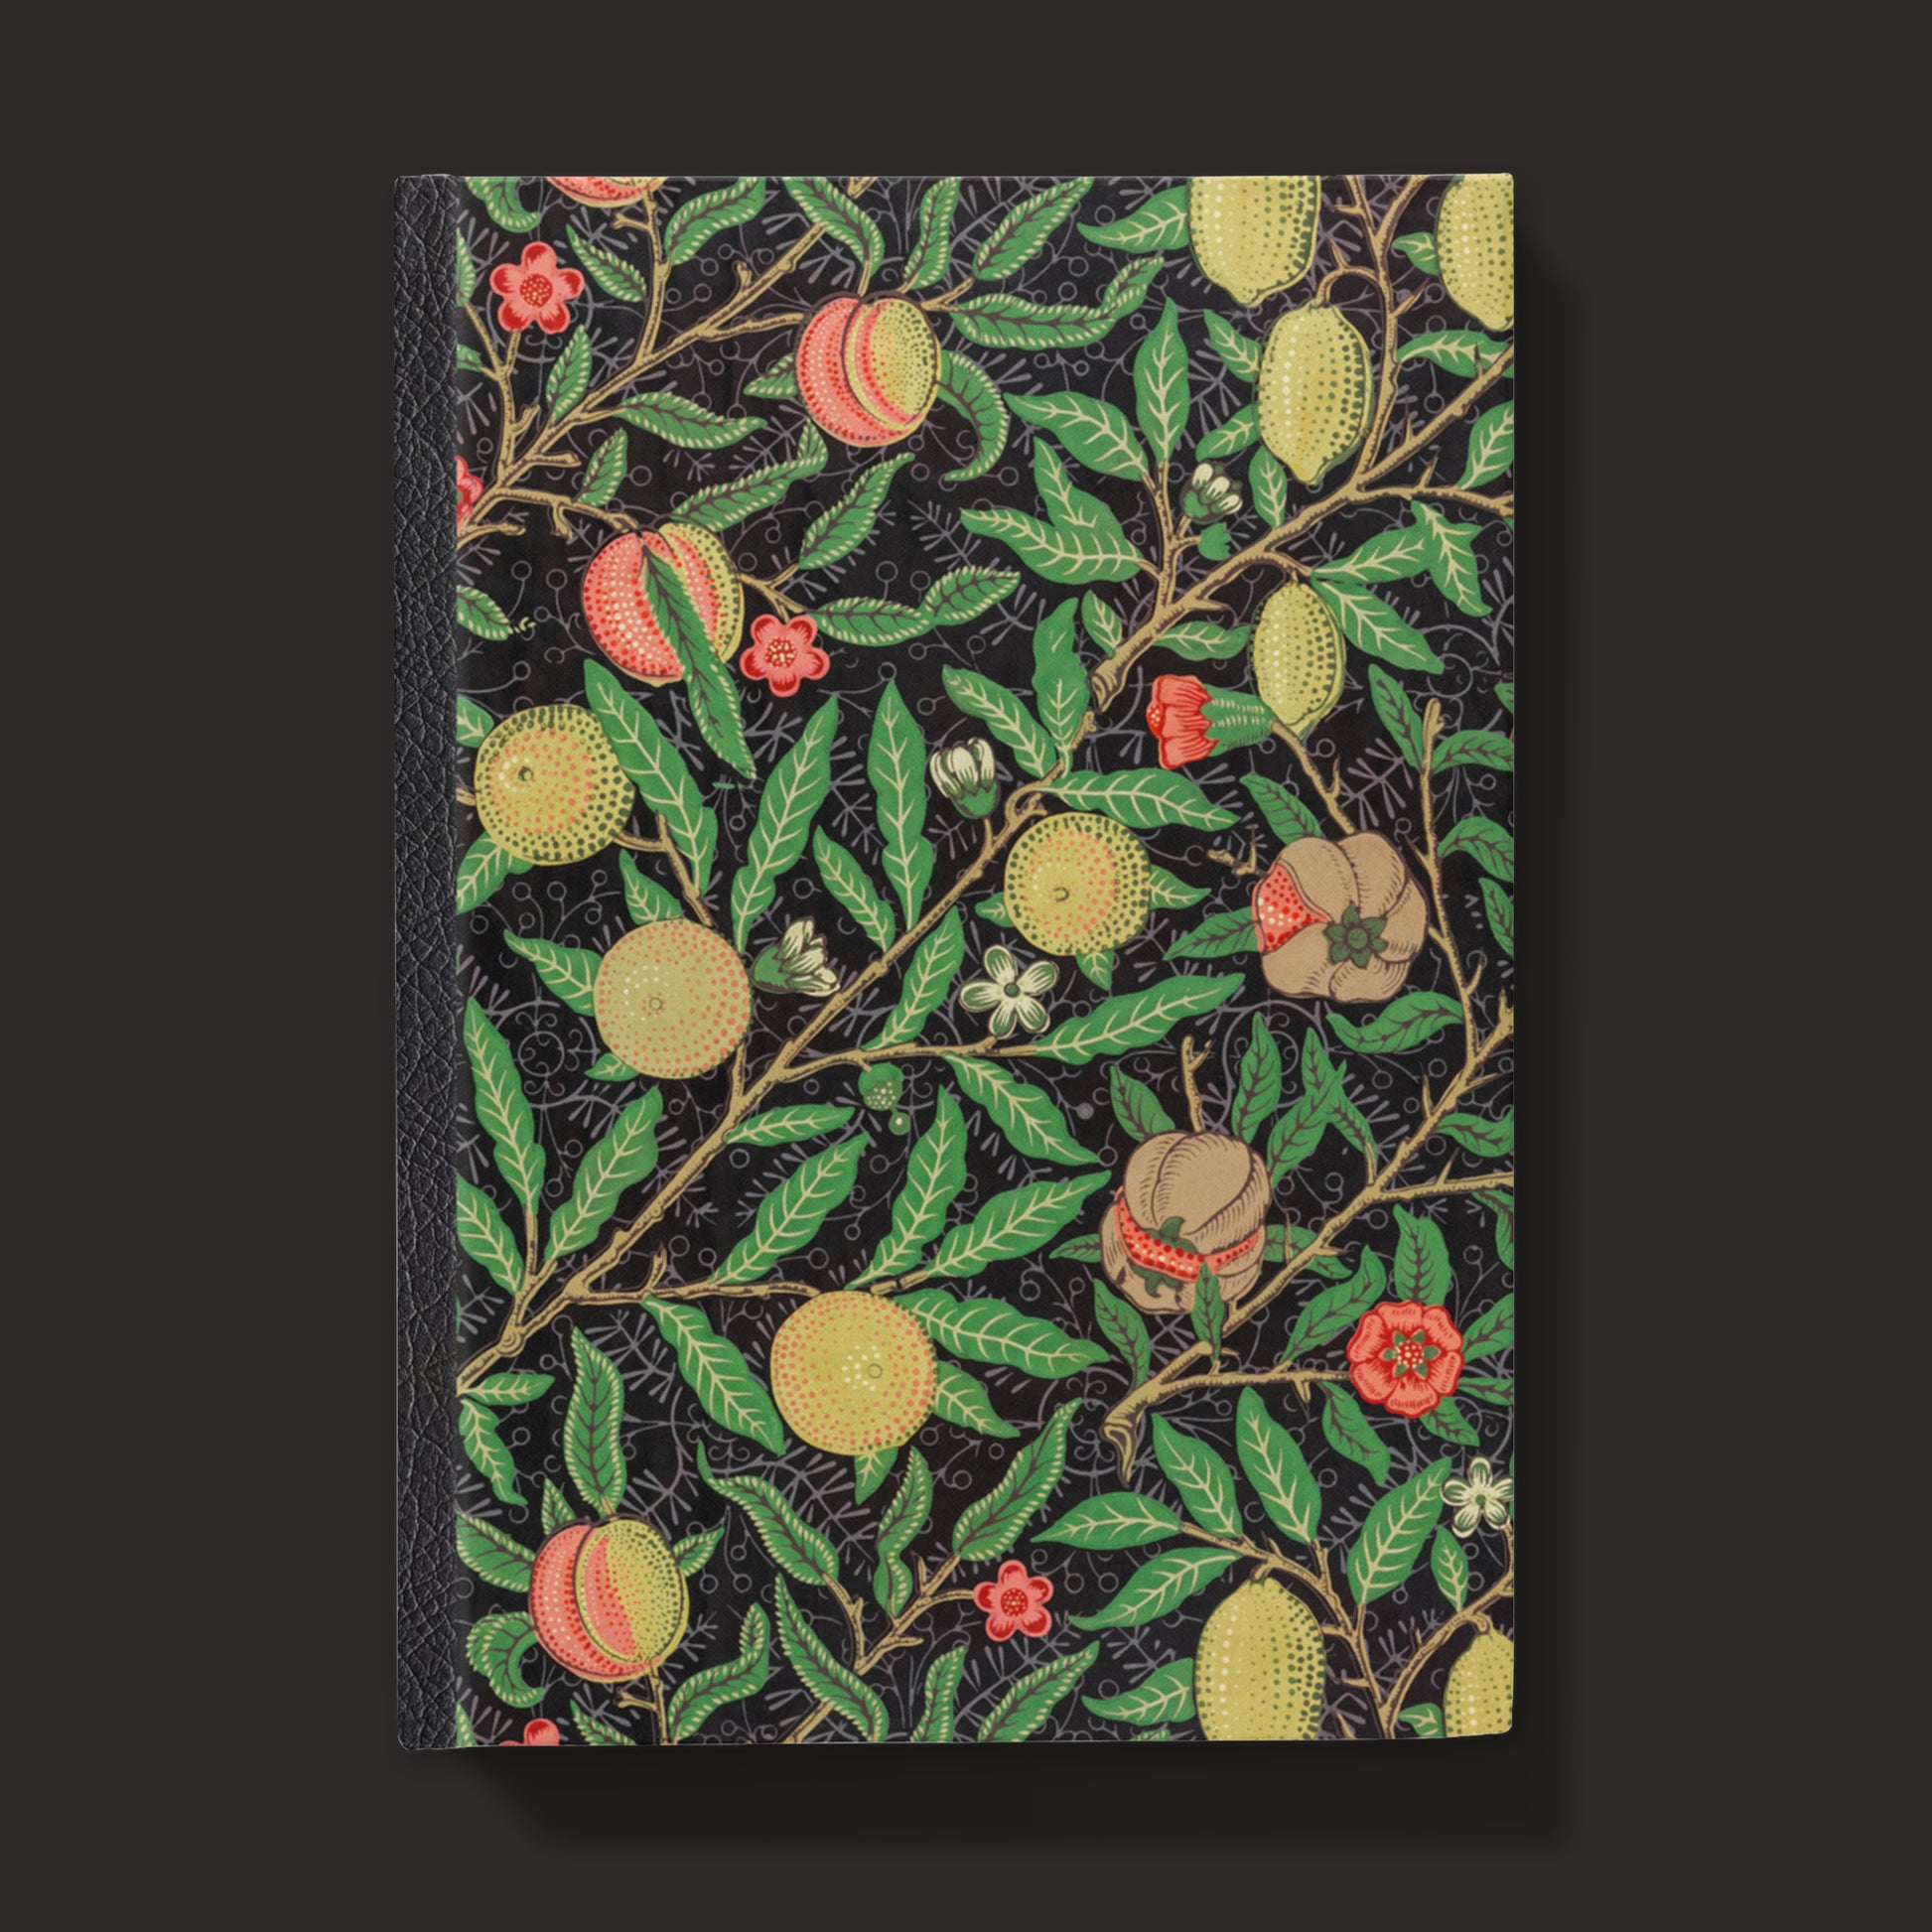 hardcover journal notebook with vintage lemon illustration